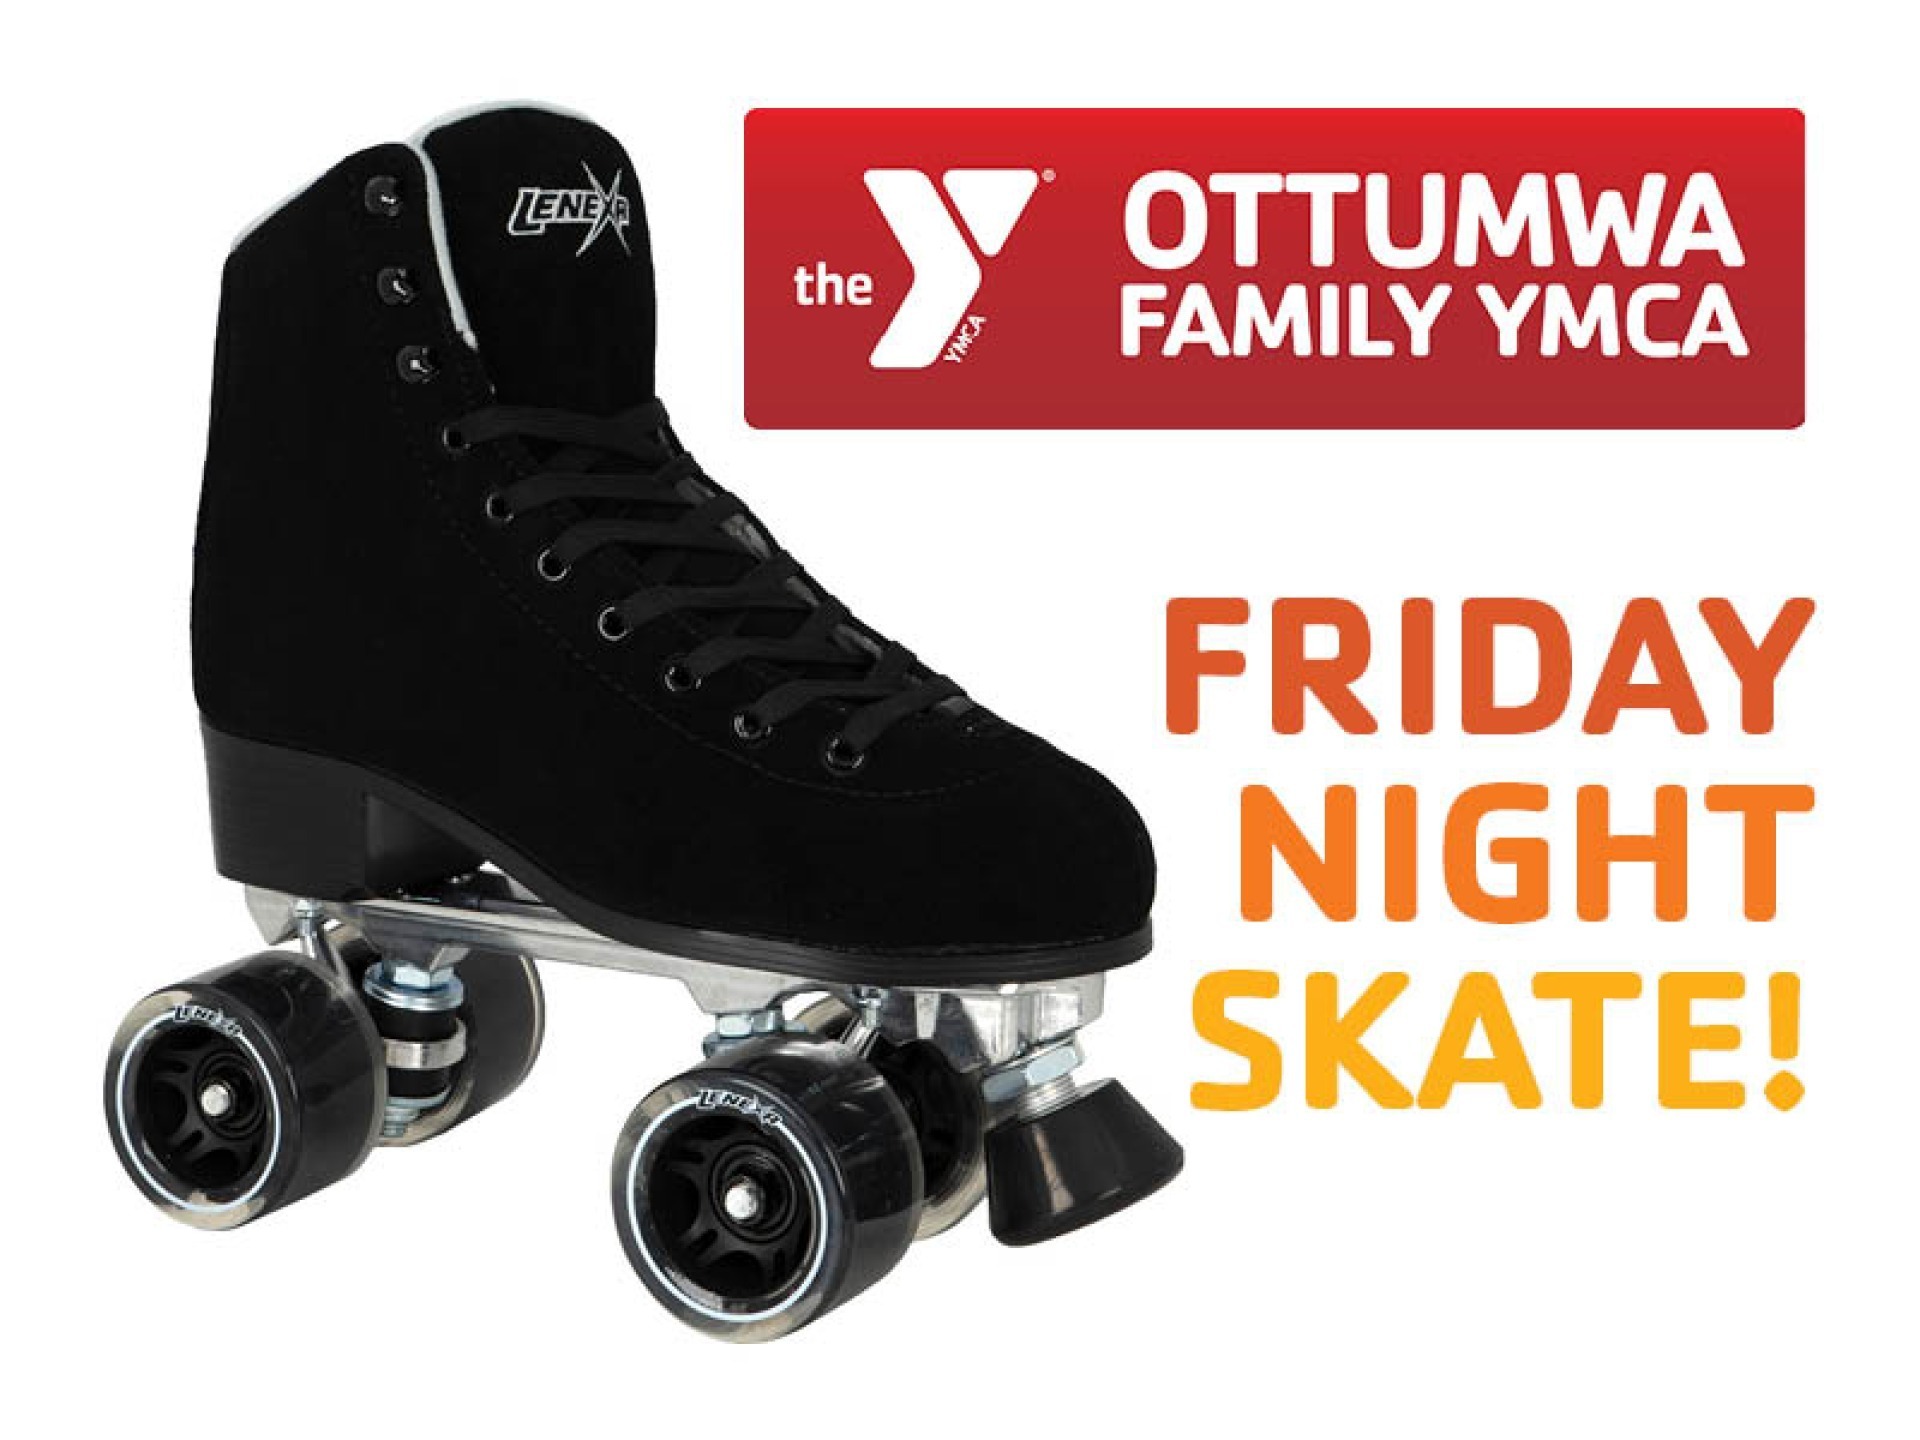 Family Skate Night